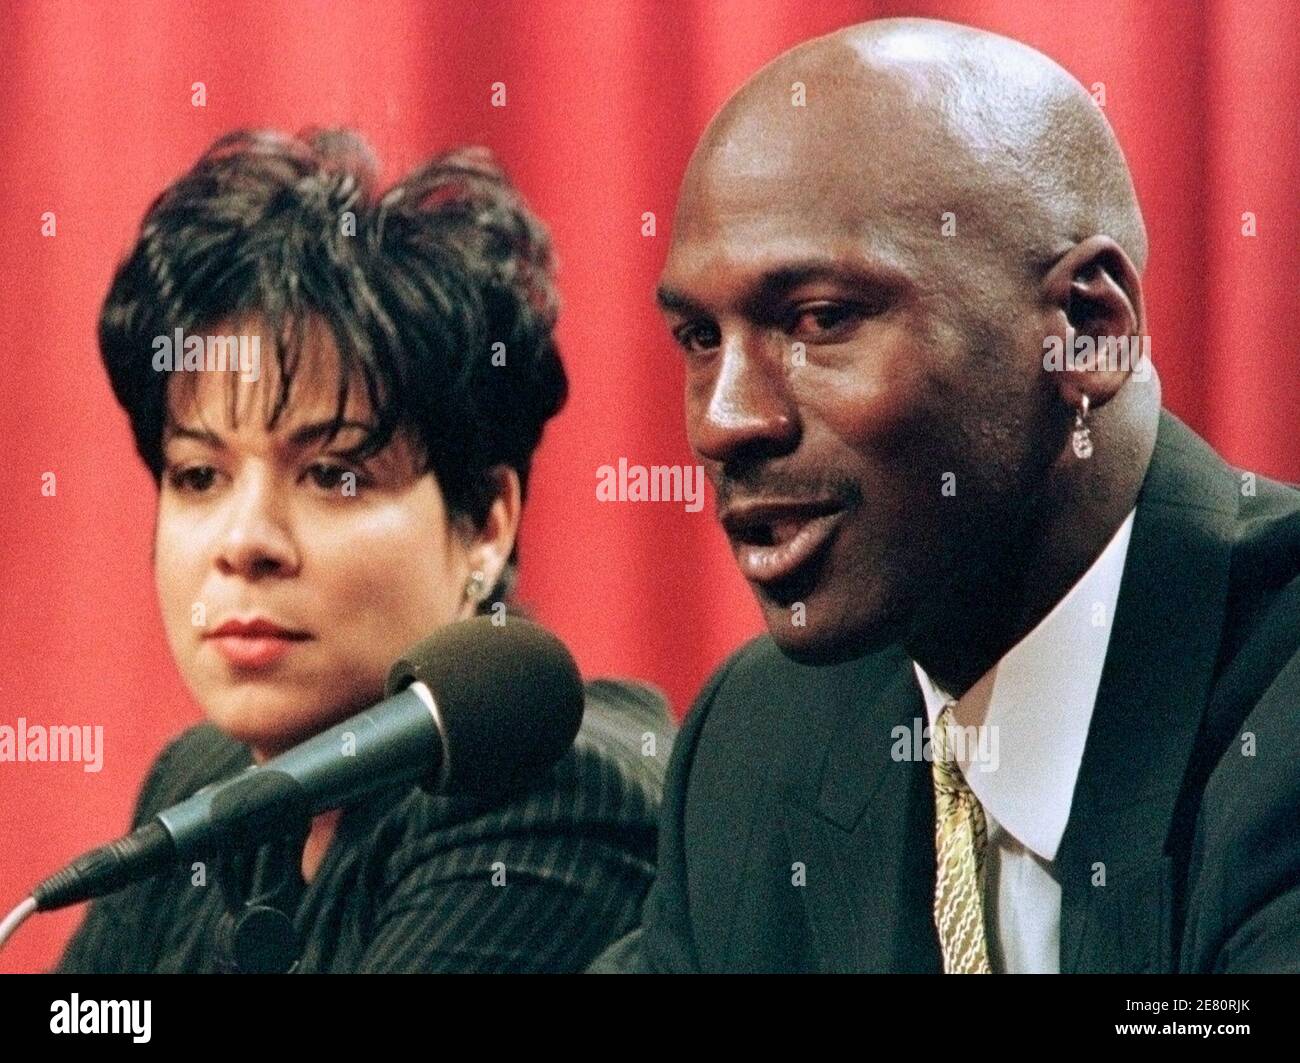 L'ancienne superstar du basket-ball Michael Jordan et sa femme Juanita  Vanoy sont présentées dans ce fichier du 13 janvier 1999, alors que Jordan  a annoncé qu'il se retirait du match de basket-ball